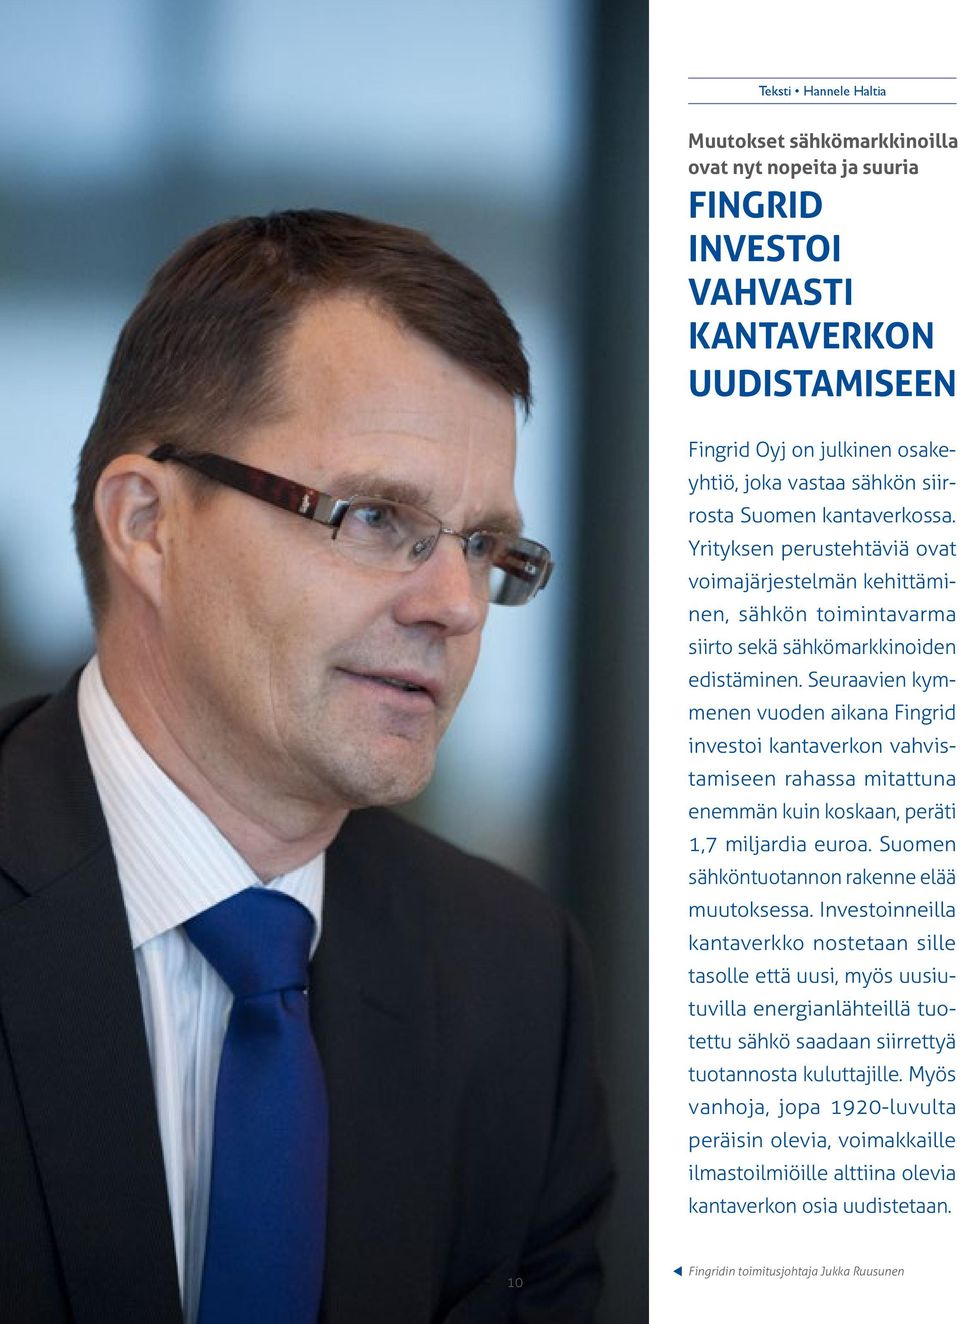 Seuraavien kymmenen vuoden aikana Fingrid investoi kantaverkon vahvistamiseen rahassa mitattuna enemmän kuin koskaan, peräti 1,7 miljardia euroa. Suomen sähköntuotannon rakenne elää muutoksessa.